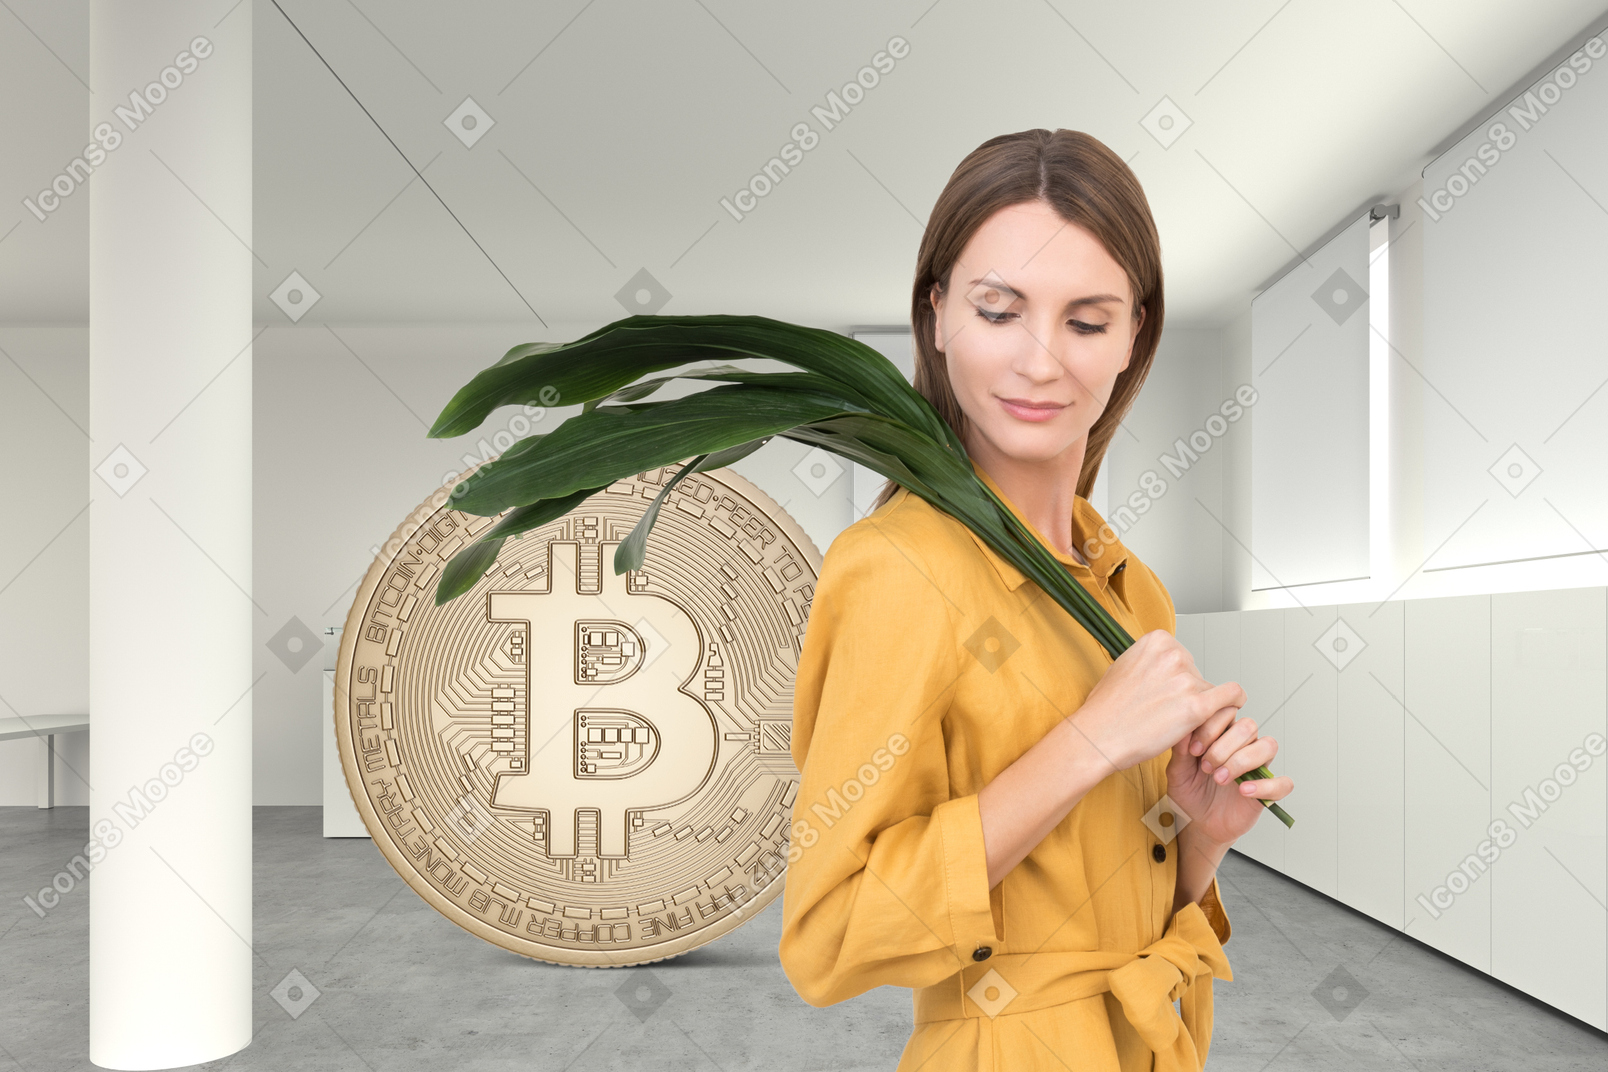 Woman and big bitcoin